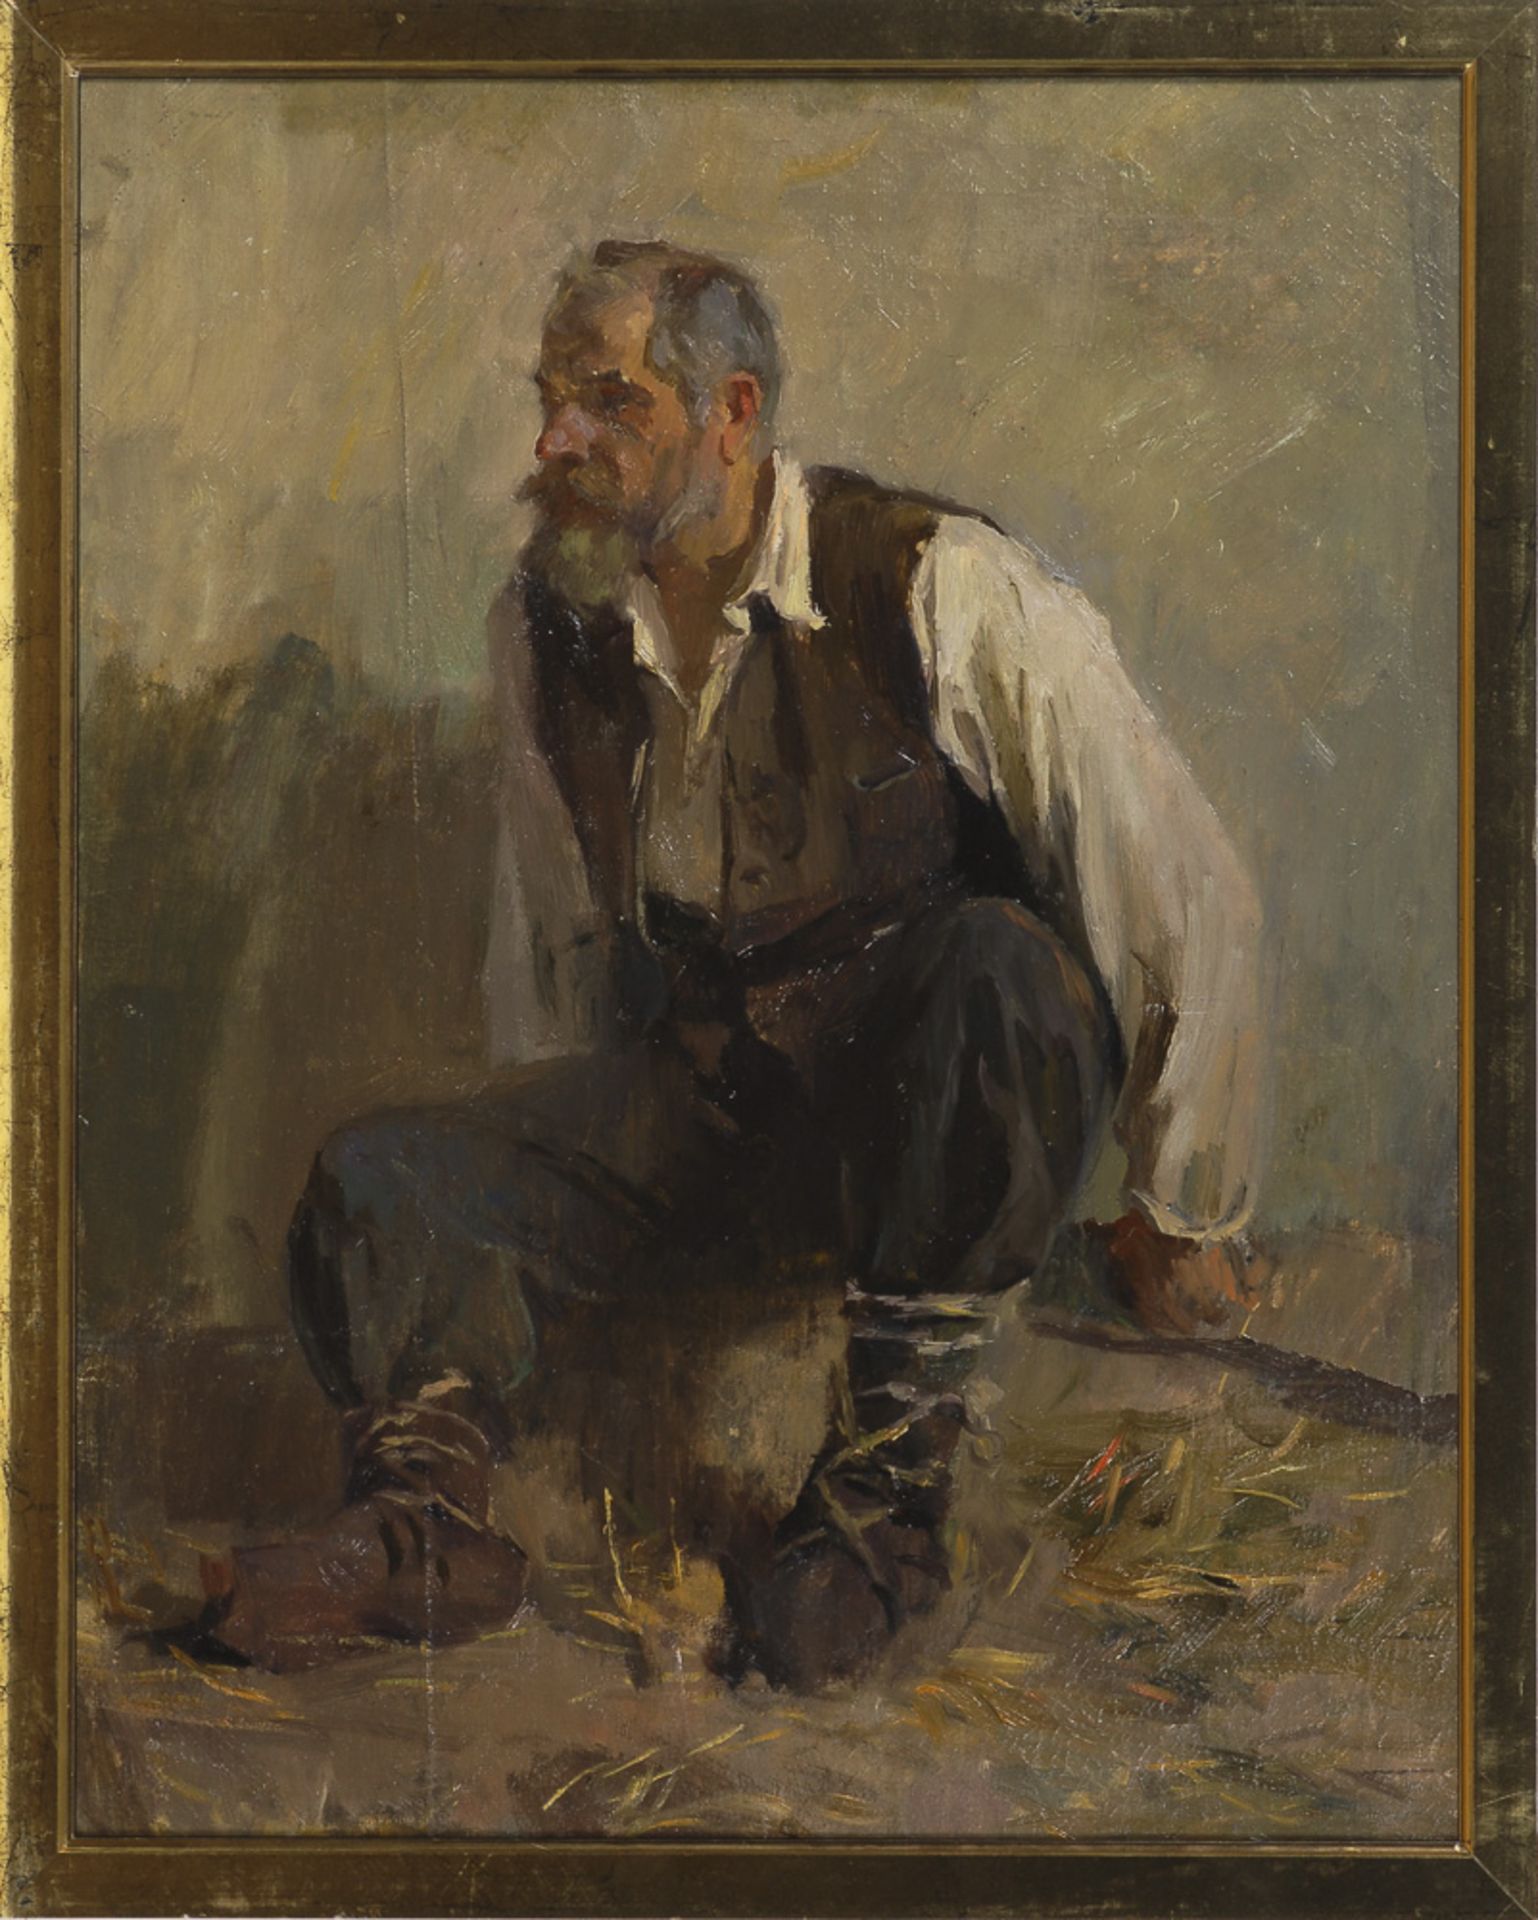 Russischer Maler: Sitzender Bauer.Öl/Leinwand, unsigniert, verso kyrillischer Schriftzug. 58 x 47 - Bild 2 aus 2